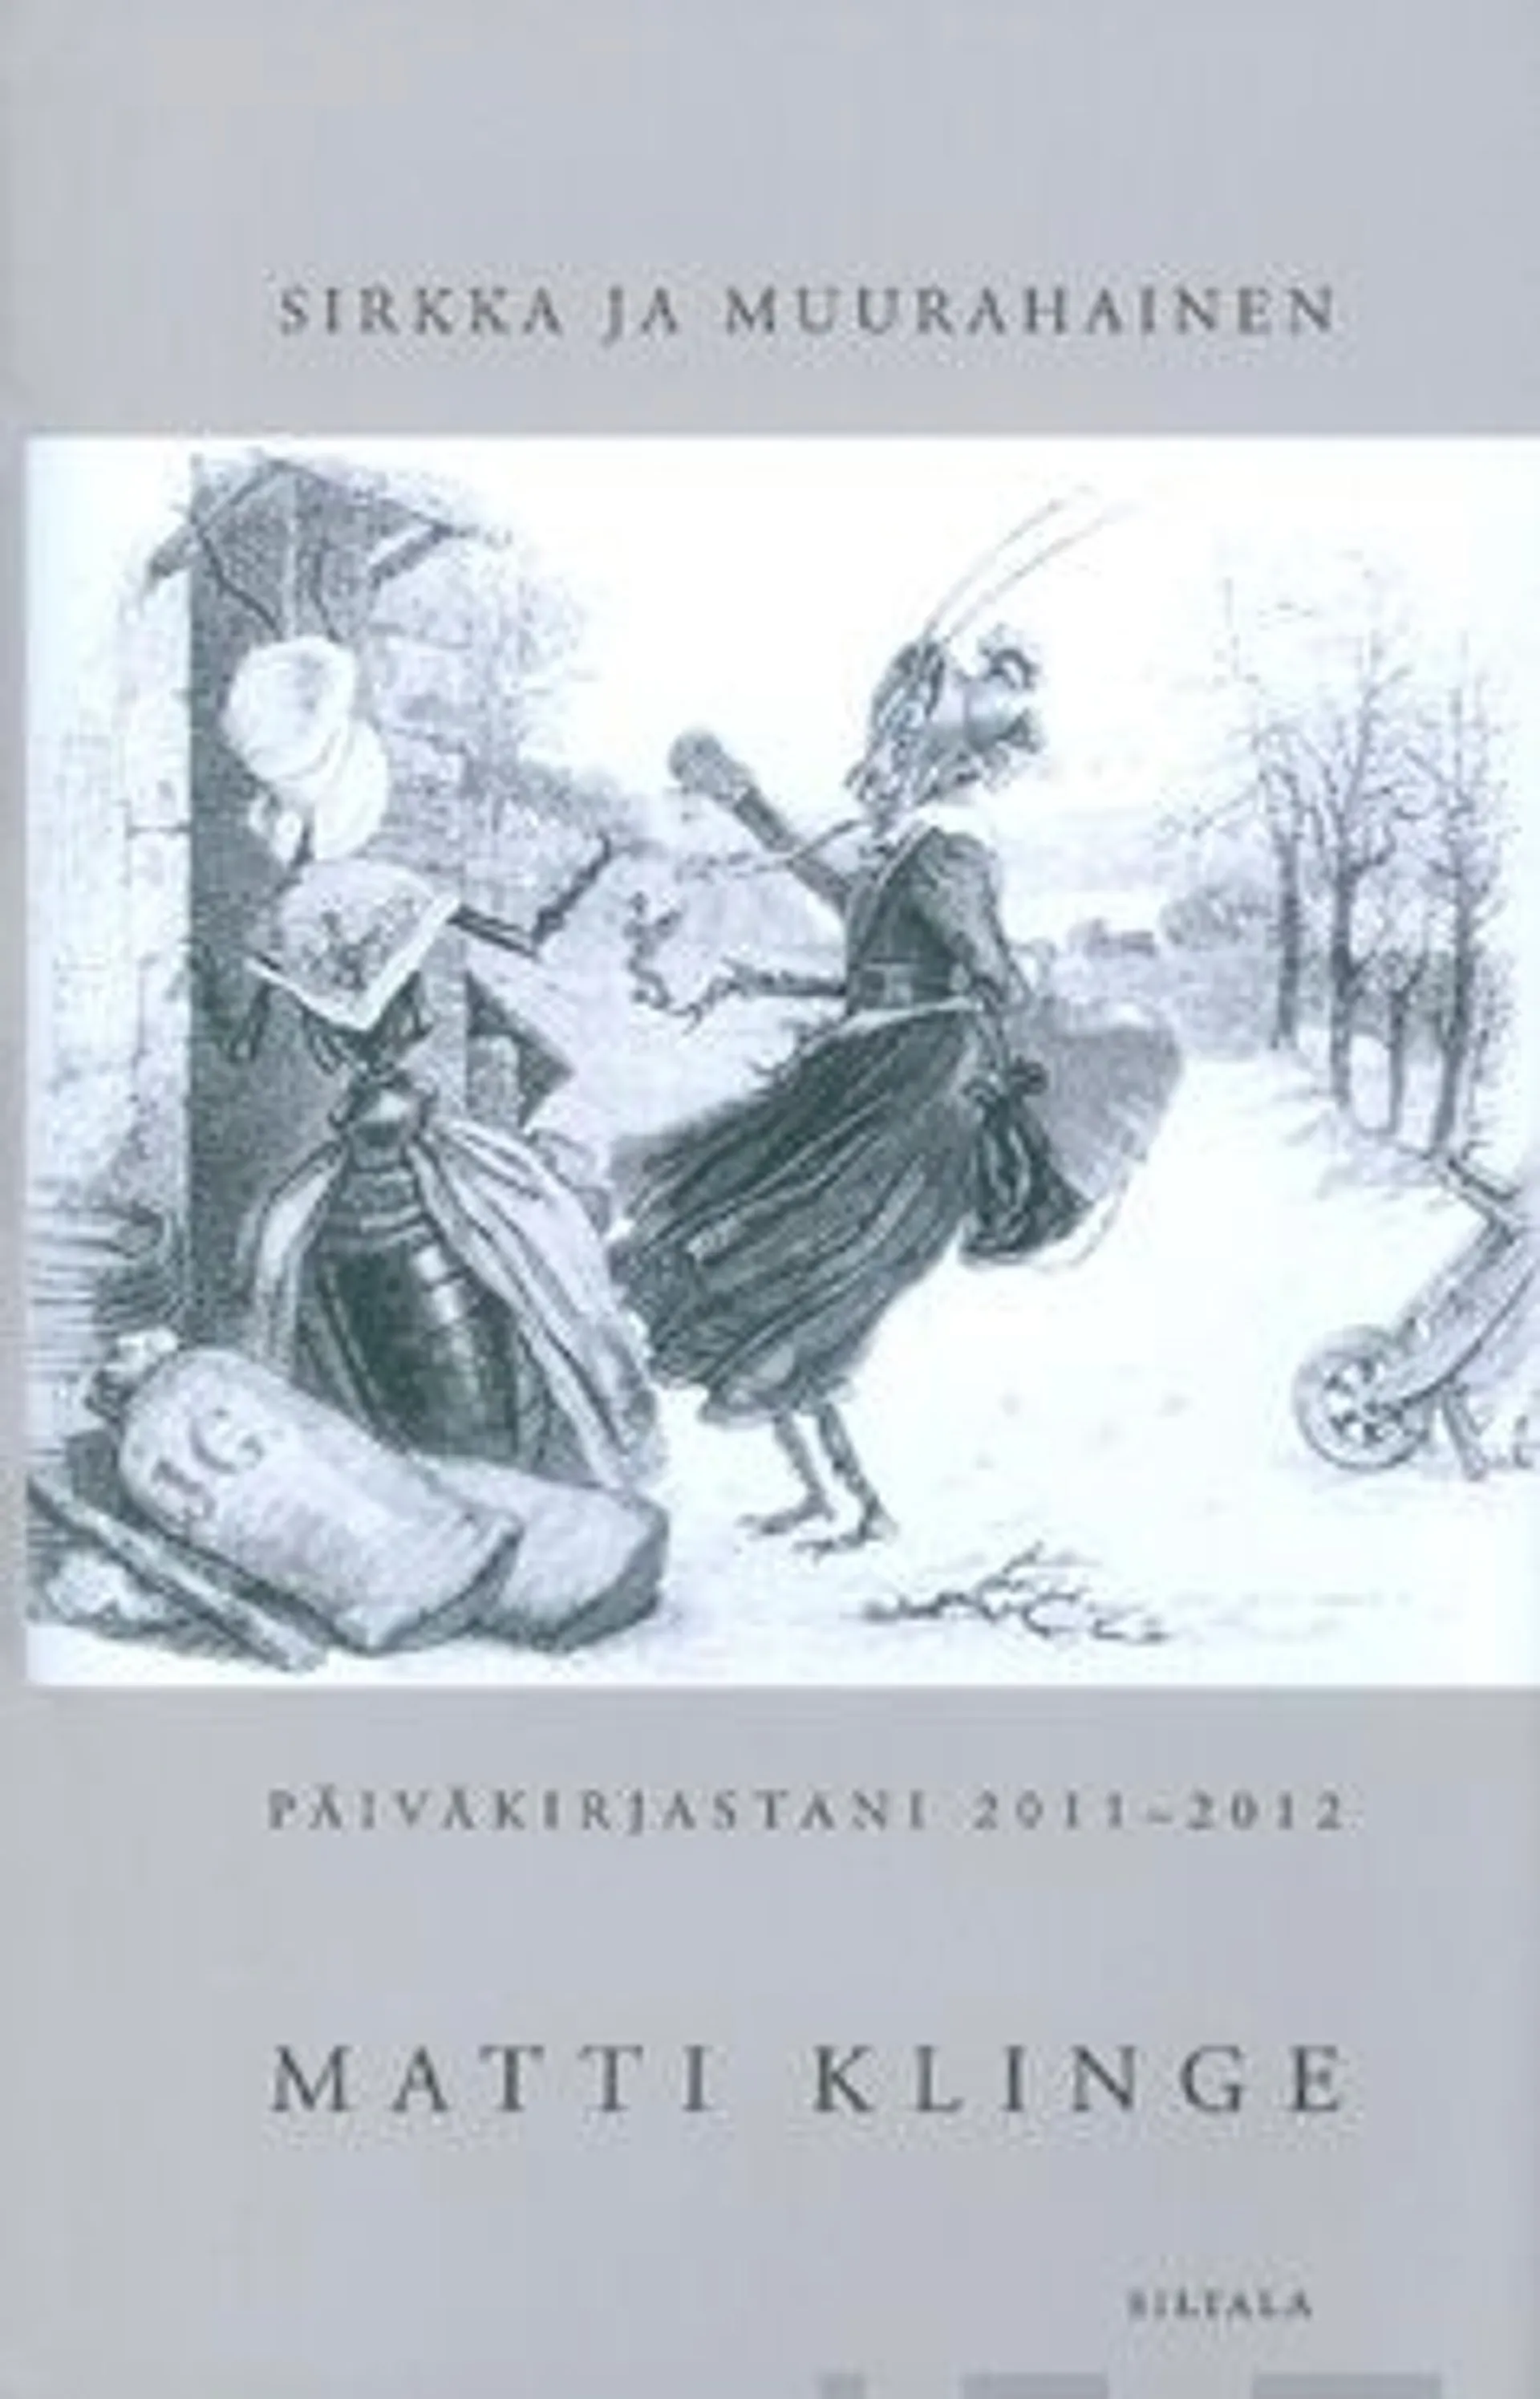 Klinge, Sirkka ja Muurahainen - päiväkirjastani 2011-2012